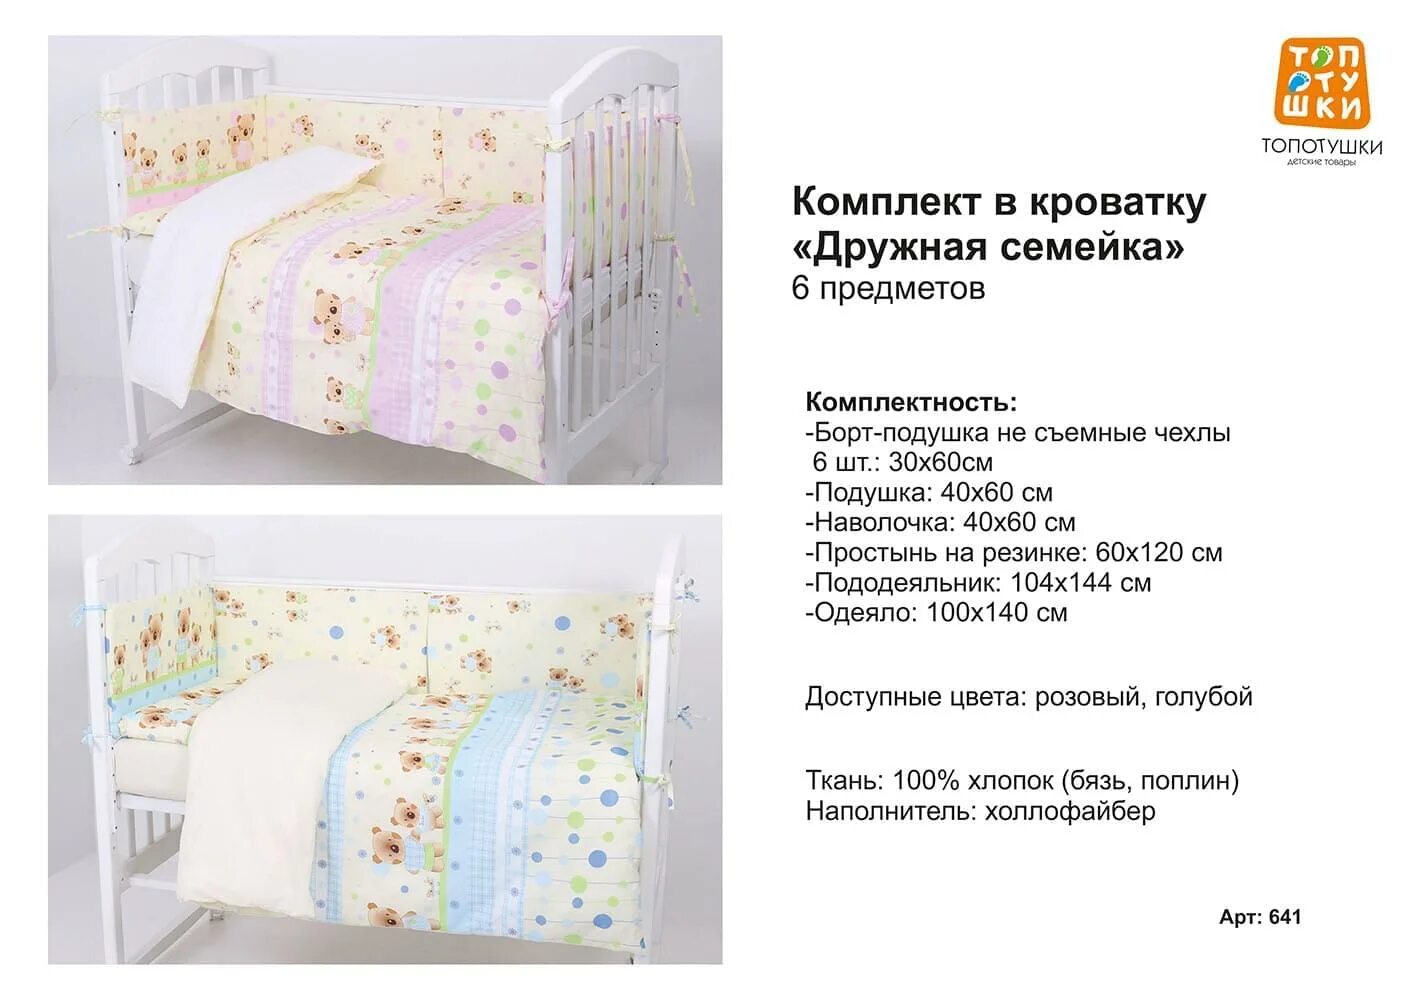 Размеры белья детской кроватки. Размеры постельного белья для новорожденных в кроватку 120 на 60. Размер постельного белья для новорожденных в кроватку 120х60. Размер детских одеял в кроватку для новорожденных. Размеры постельного белья для новорожденного в детскую кроватку 120х60.